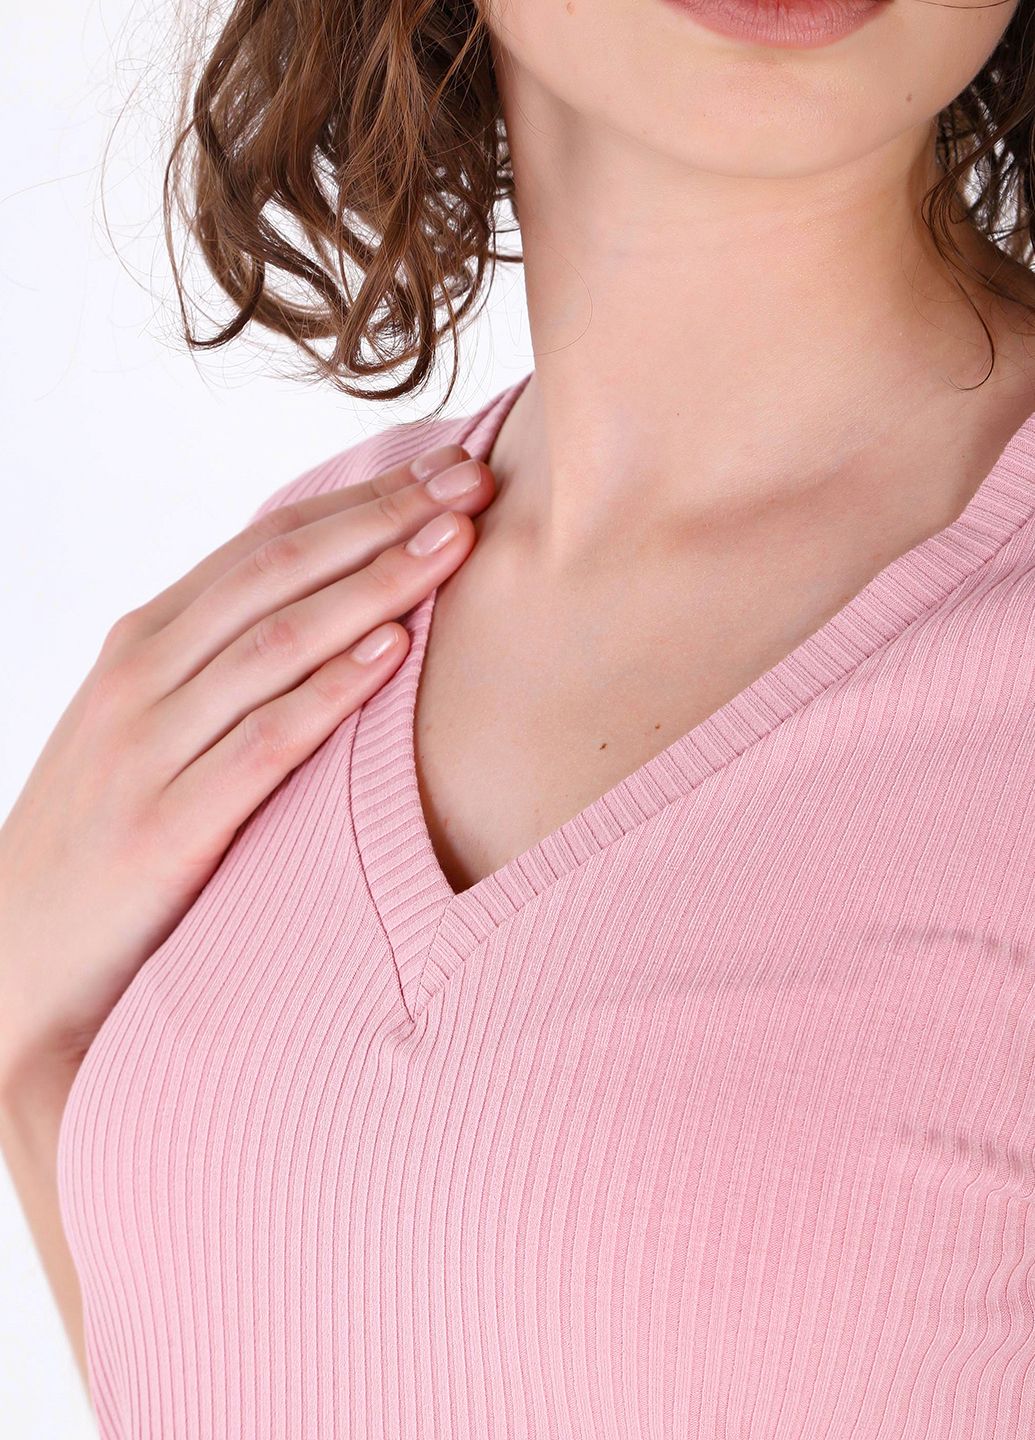 Купить Легкая футболка женская в рубчик Merlini Корунья 800000026 - Розовый, 42-44 в интернет-магазине